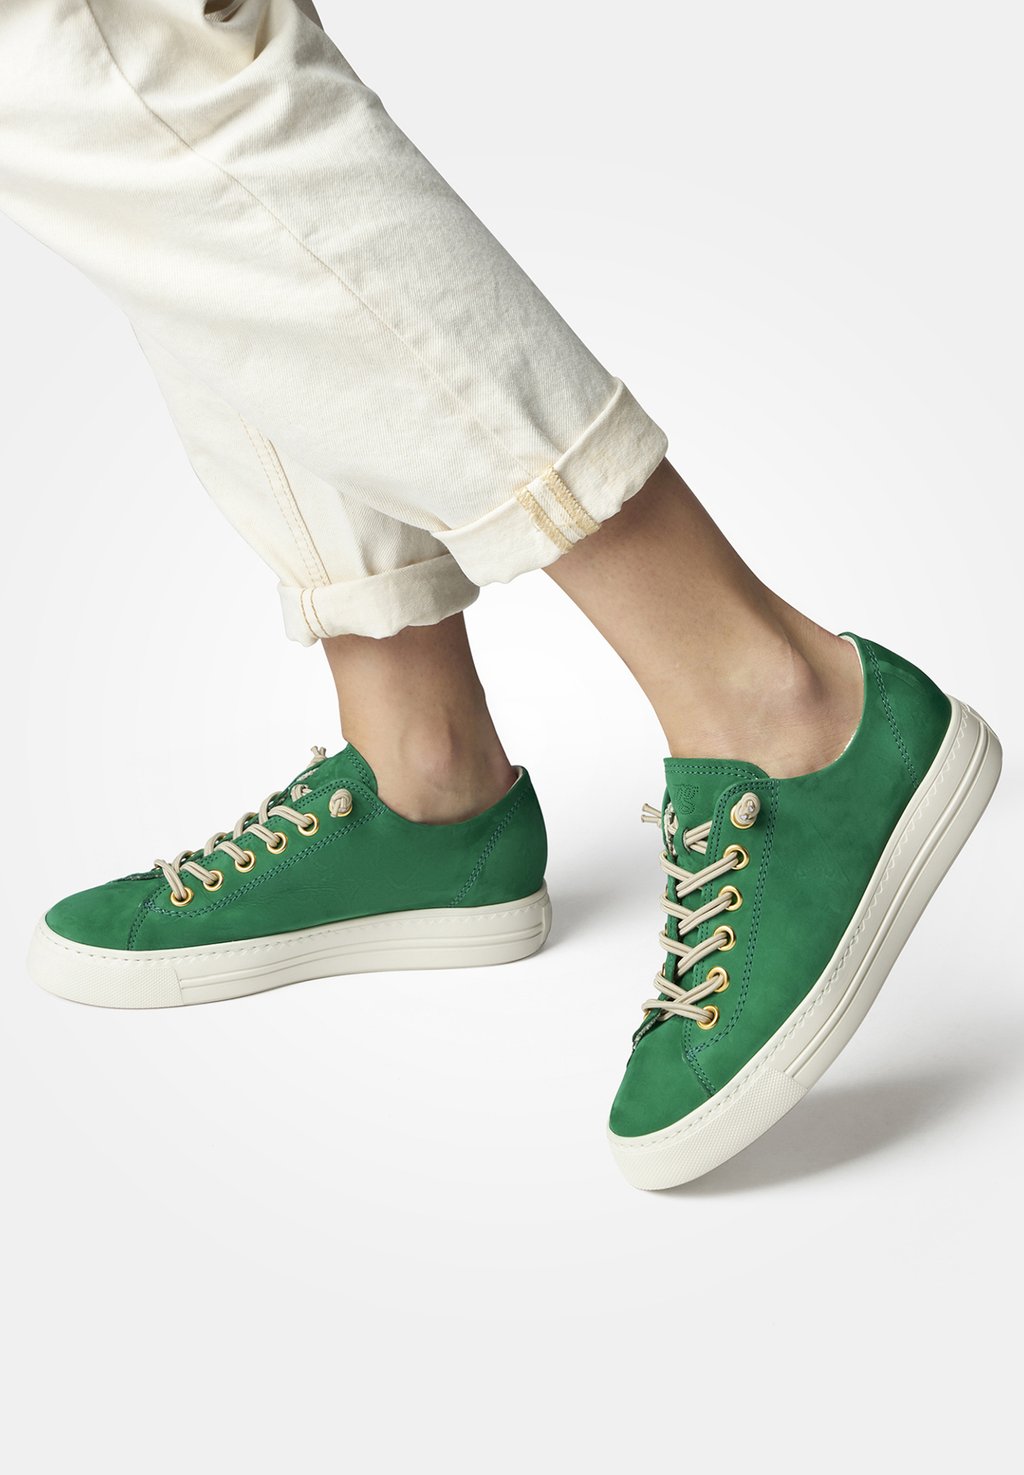 Низкие кроссовки Paul Green, королевский нубук зеленый кроссовки paul green zapatillas royal iron